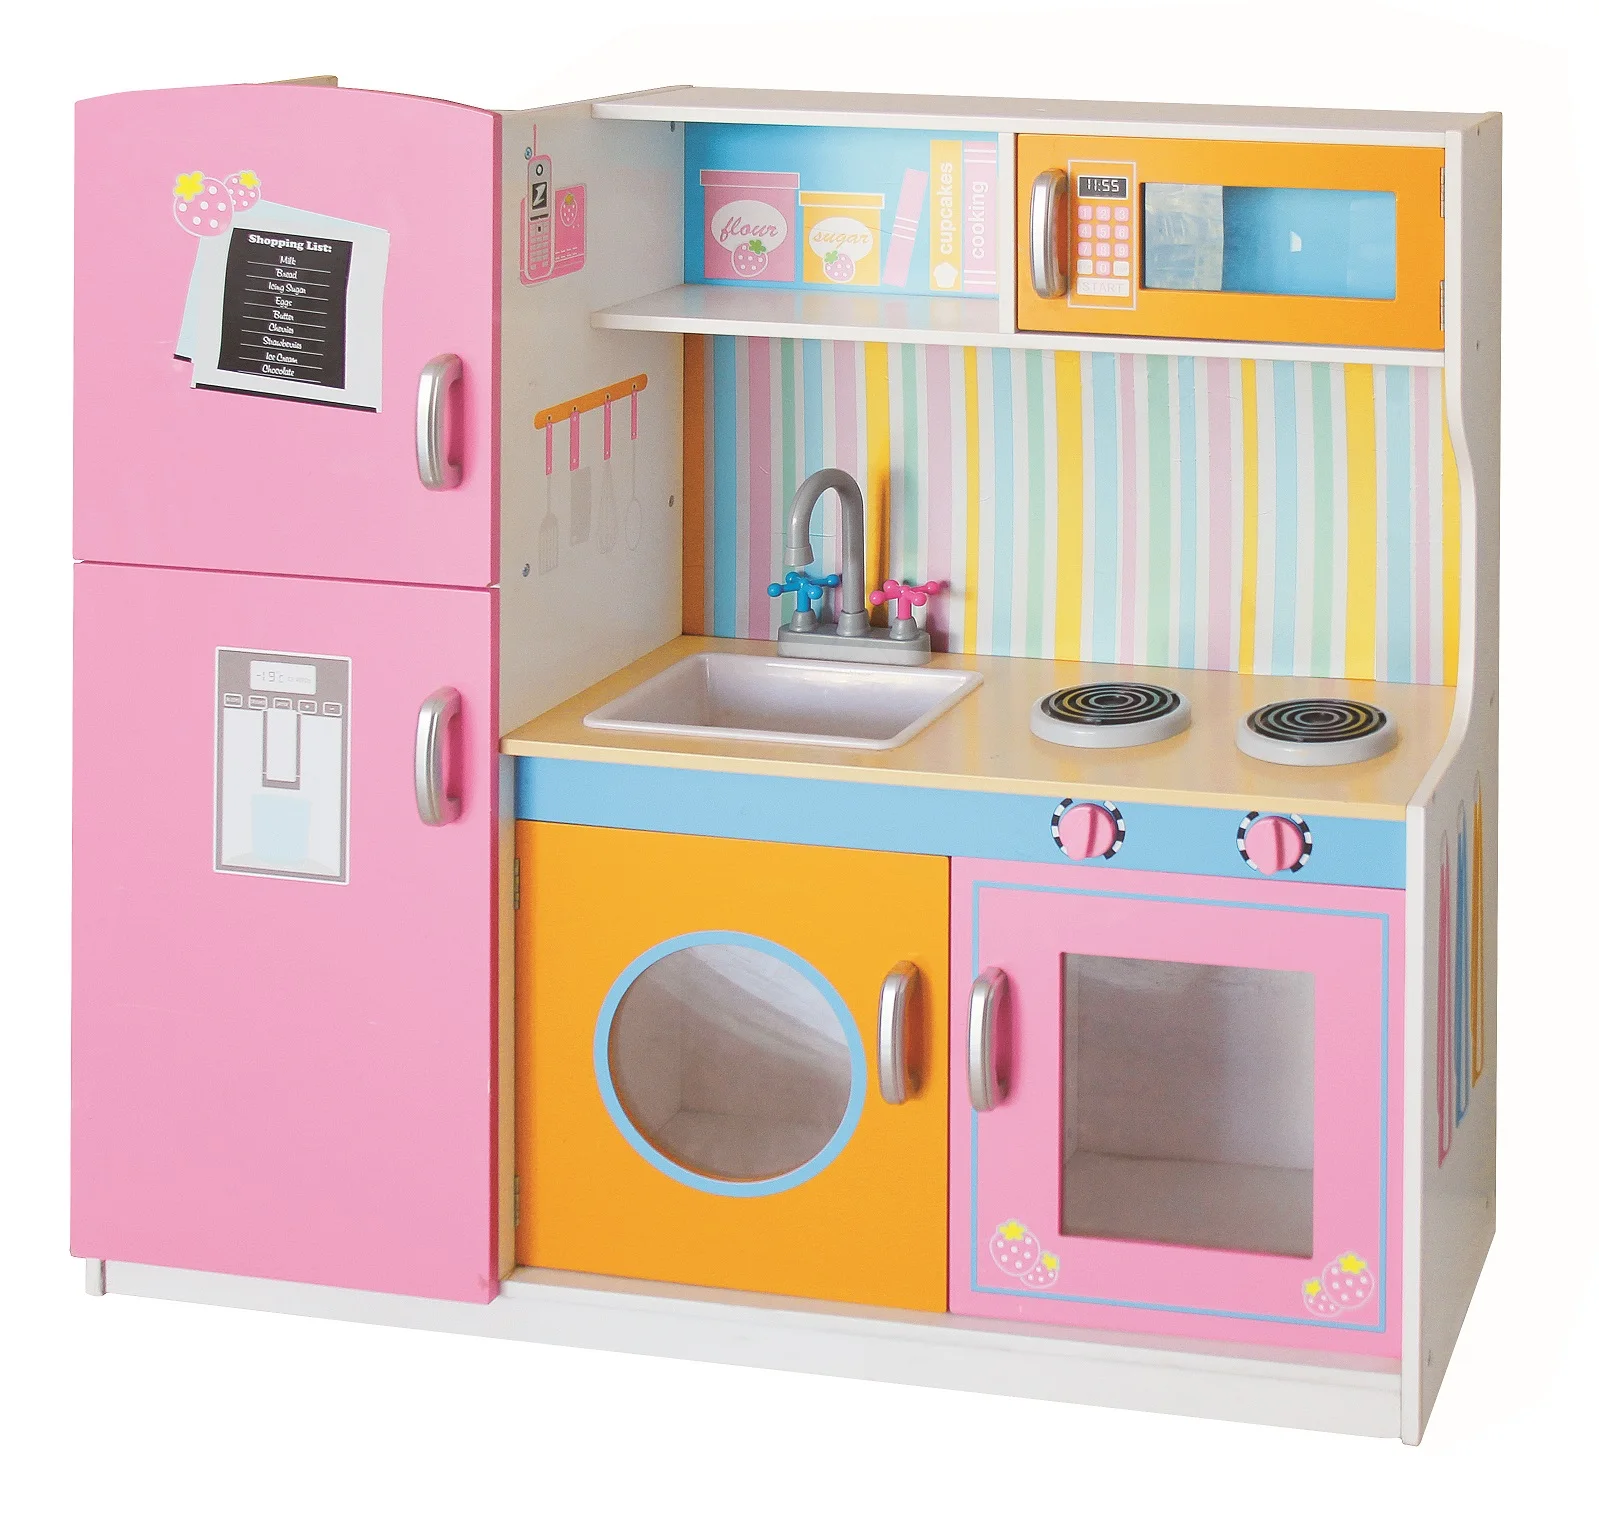 25 New Product Girls Kids Children Pink Wooden Big Kitchen Play ...